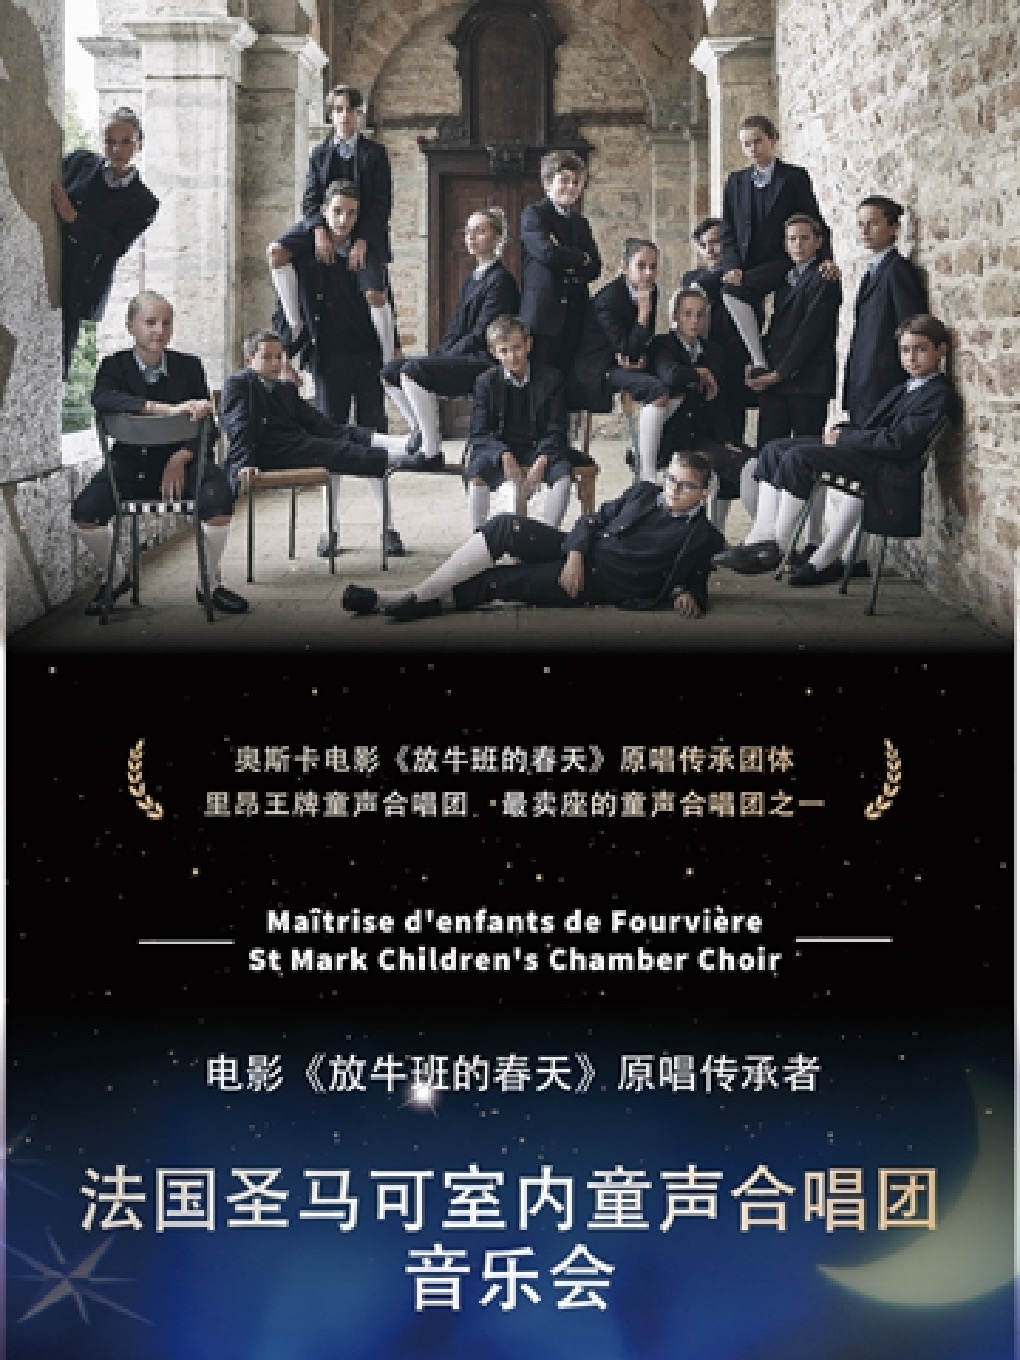 [上海]电影《放牛班的春天》原唱传承者-法国圣马可室内童声合唱团音乐会